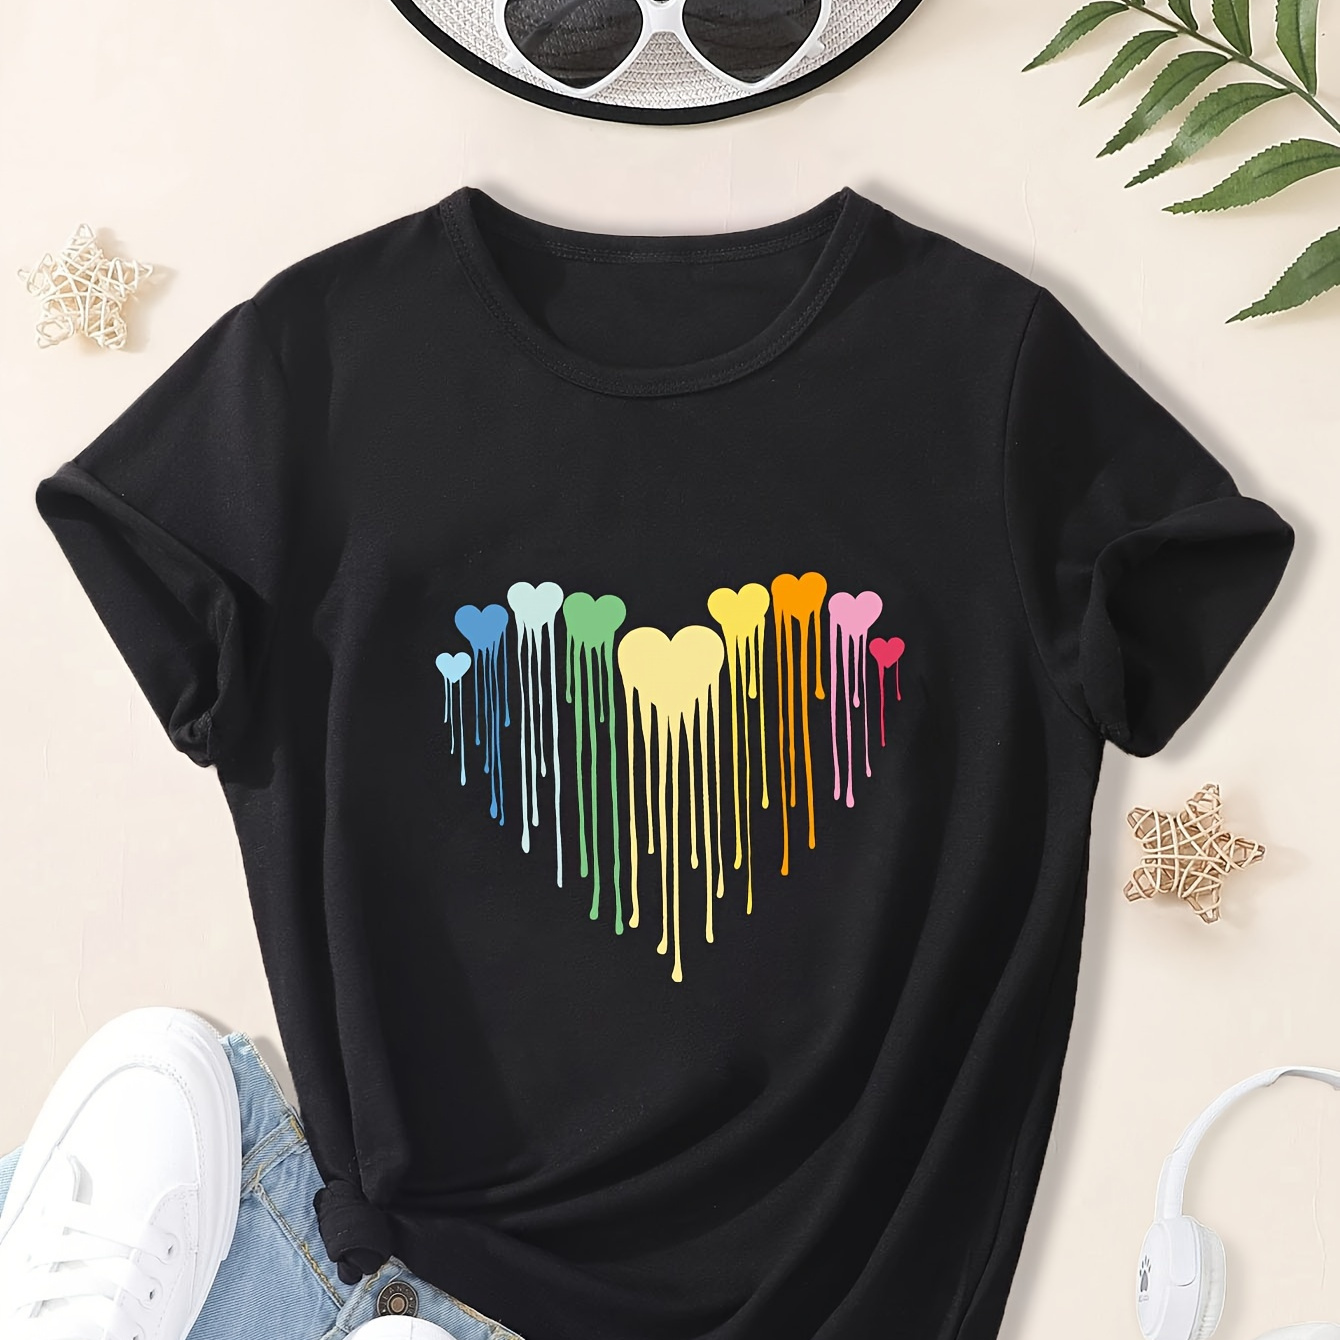 

Girls Tie Dye Heart Print Short Sleeve T-shirt Summer Clothes Gift